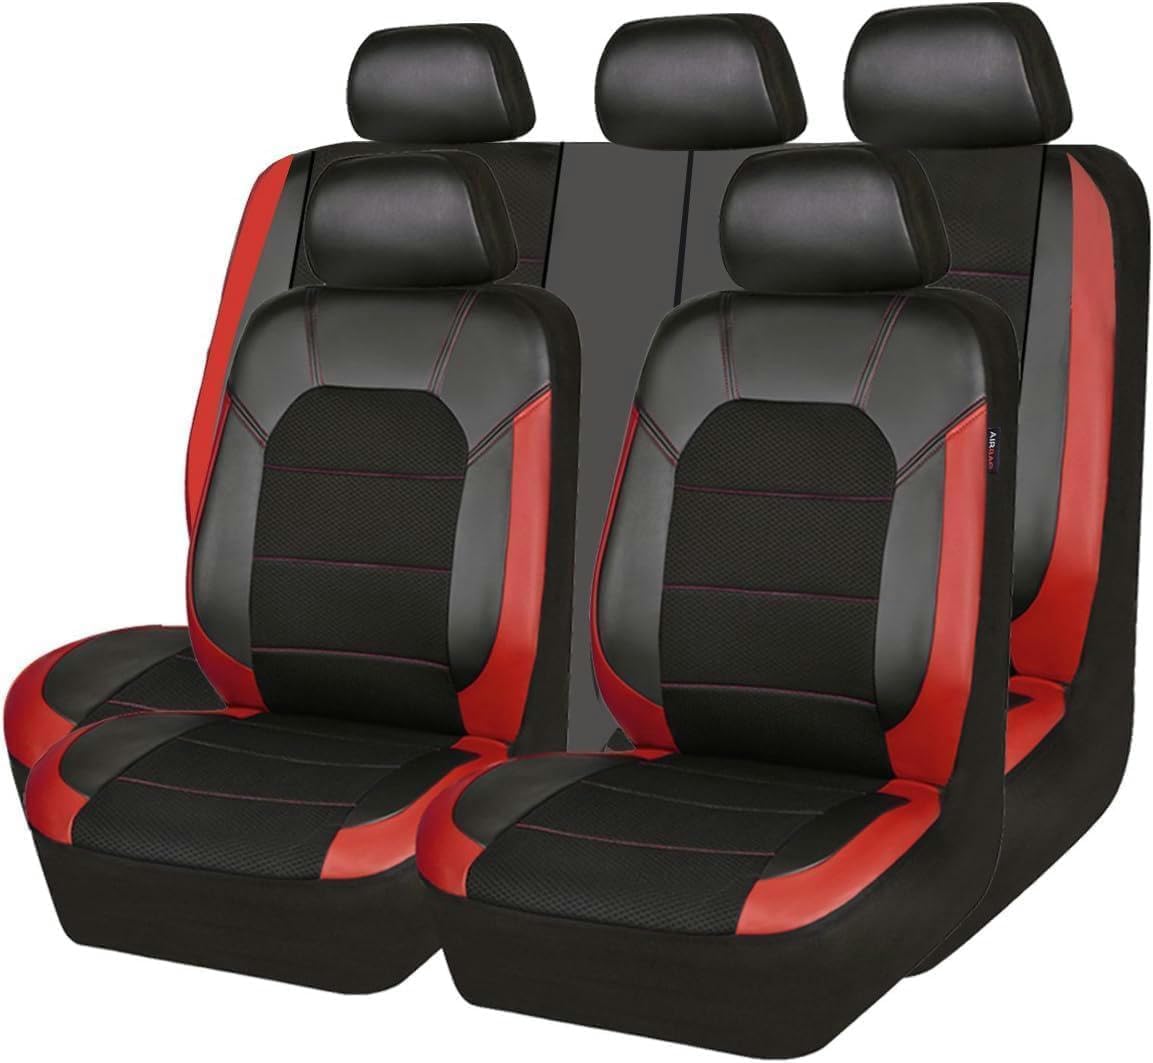 qsms01 Für VW Golf 6 GTI Golf 7 Golf 7 GTI Golf Tdi Golf Sportsvan-Autositzbezug-Set, atmungsaktiver, wasserdichter und bequemer Autositzschutz,C/BlackRed von qsms01